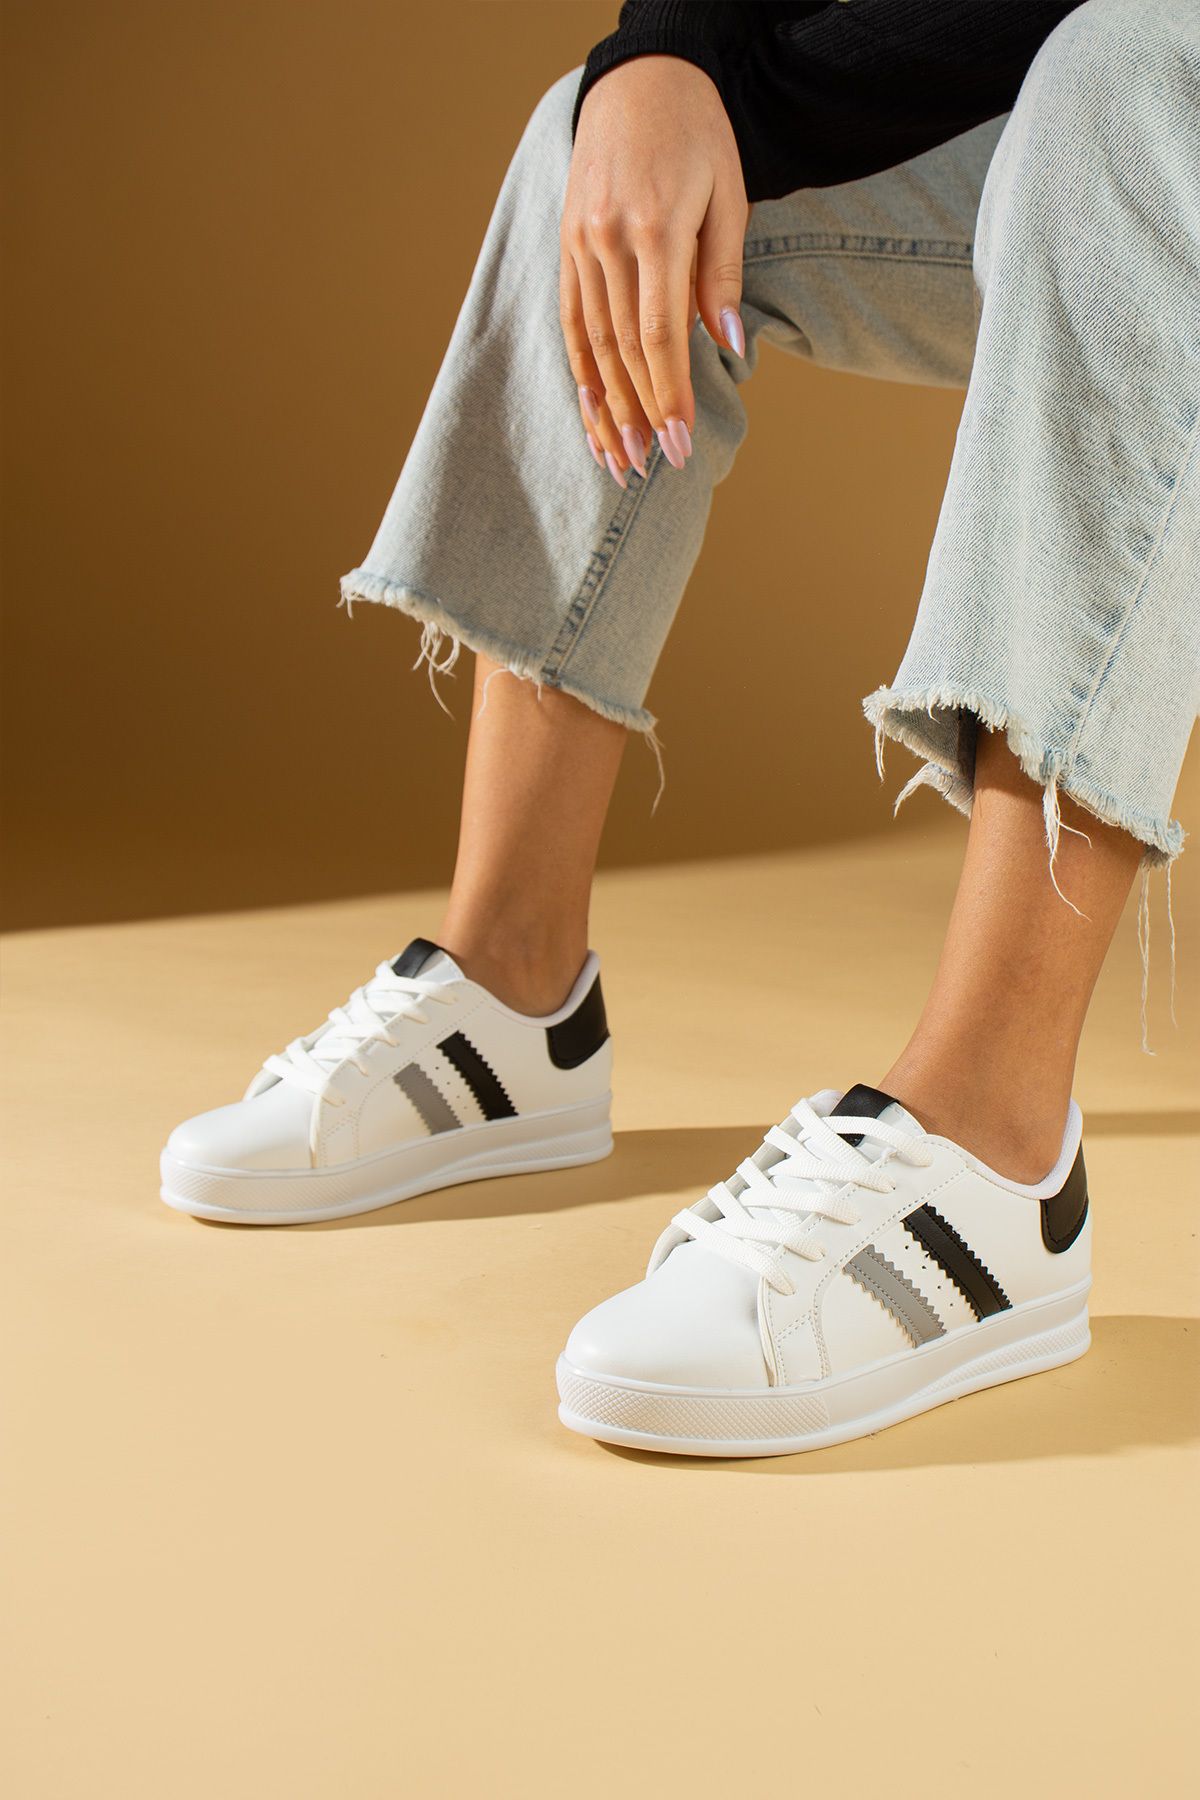 Pembe Potin Beyaz Siyah Kadın Spor Sneaker Bağcıklı Günlük Rahat Taban Ayakkabı